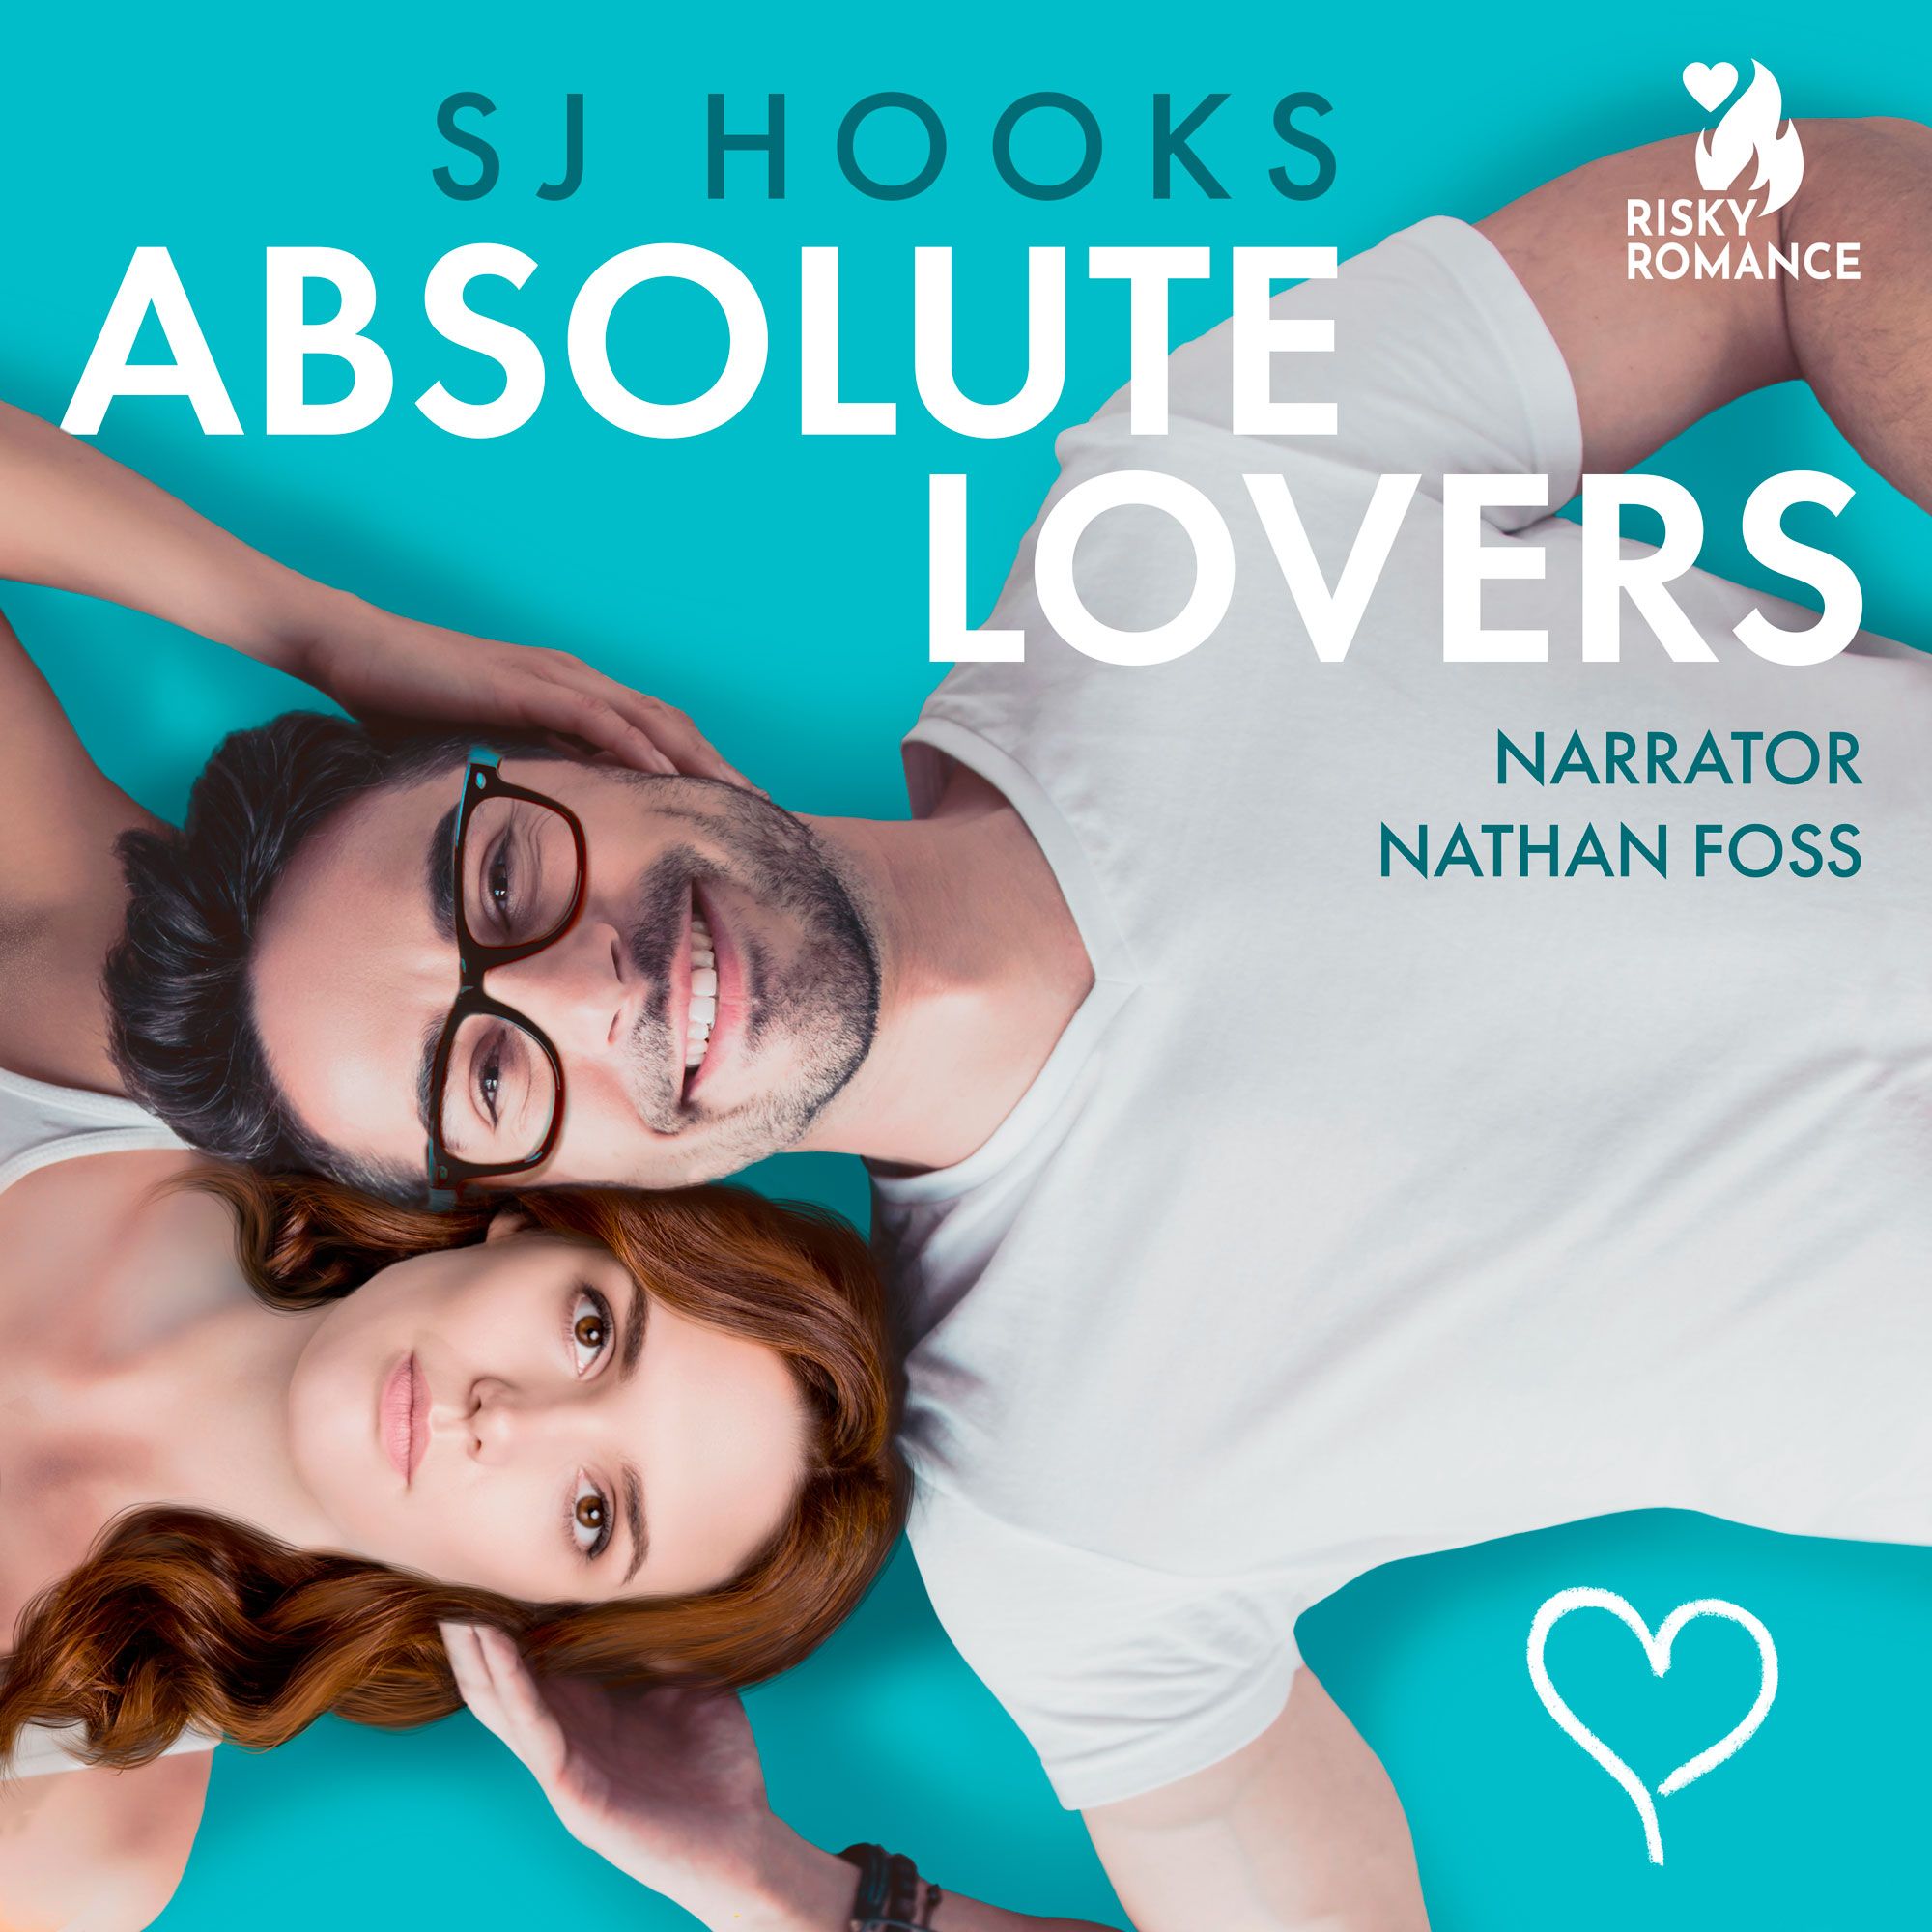 Absolute Lovers, ljudbok av SJ Hooks